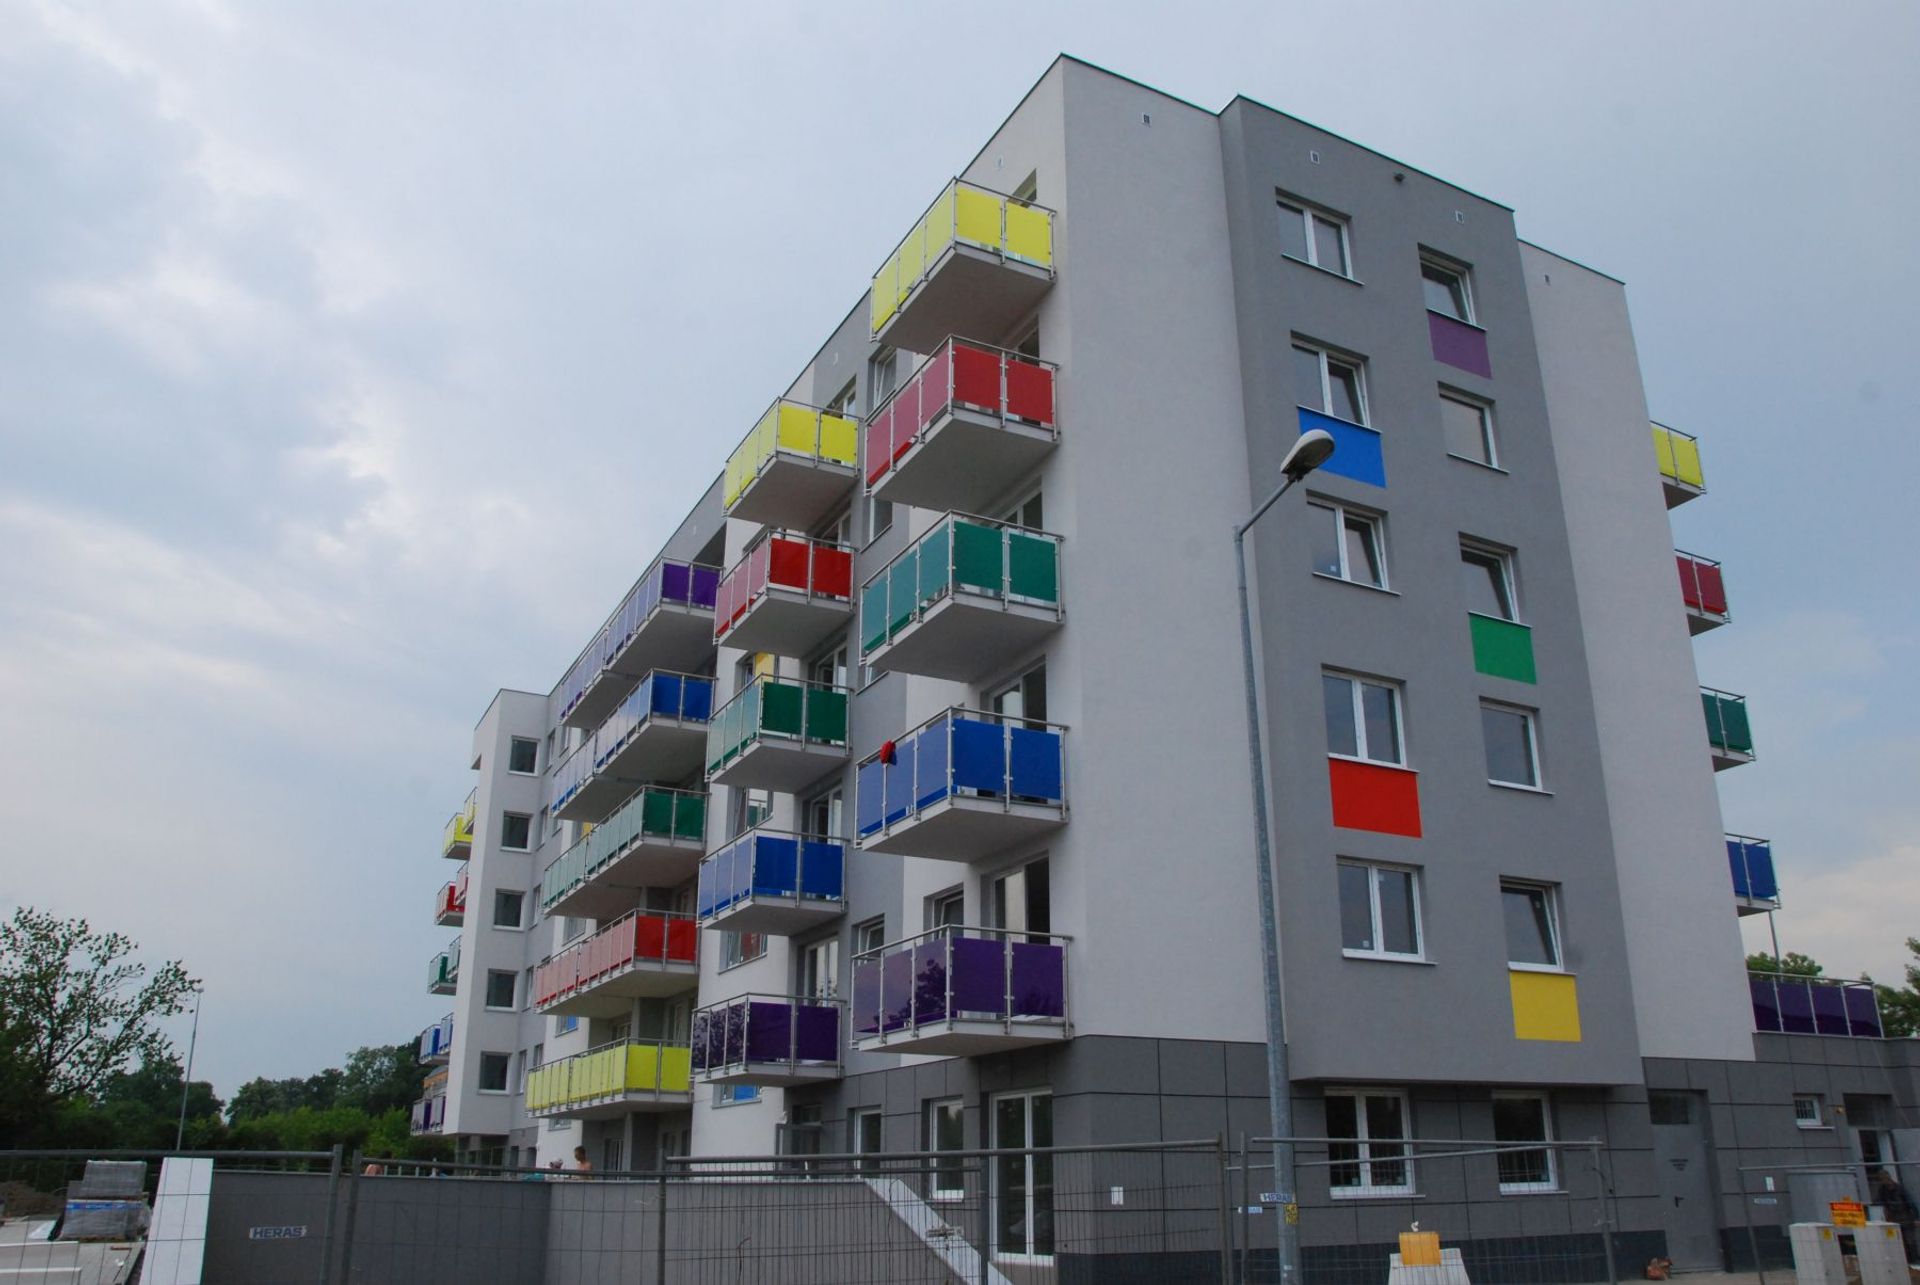  Kolejne gotowe mieszkania na Krzykach. Budotex kończy budowę Tęczowego Raju.